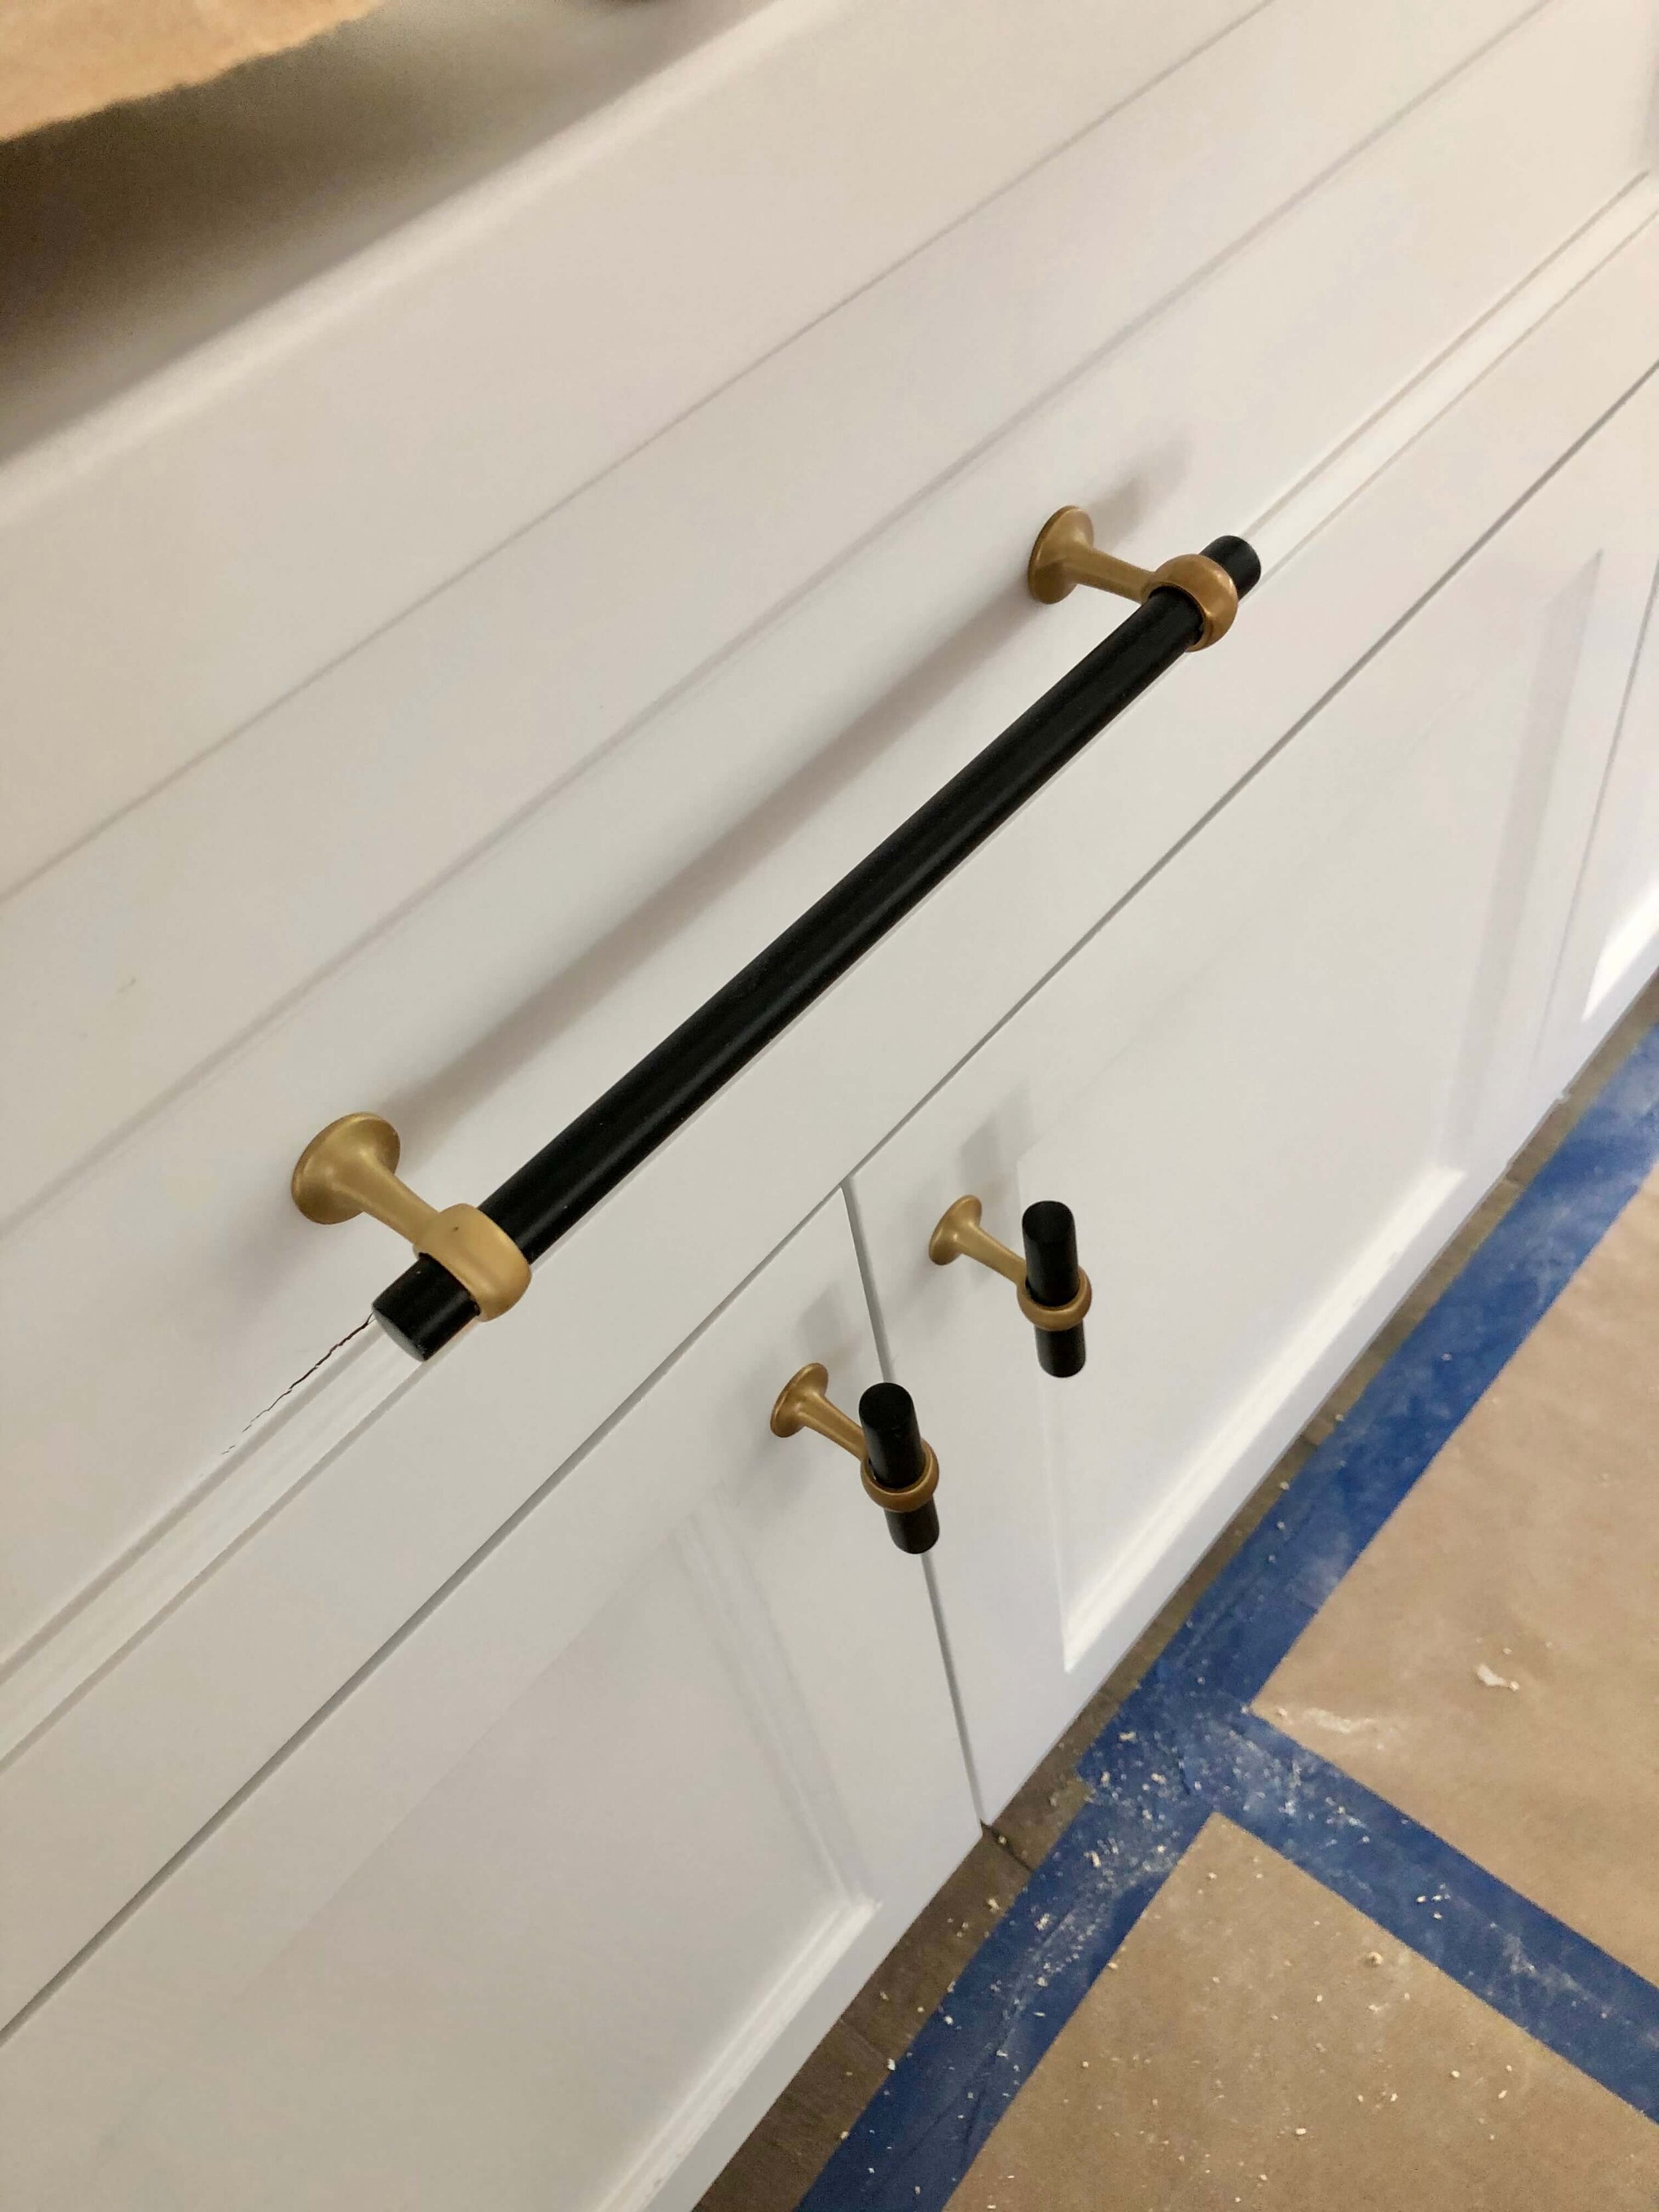 Furniture dresser handle Vintage furniture hardware Metal drawer pull knobs Set of 4 handles